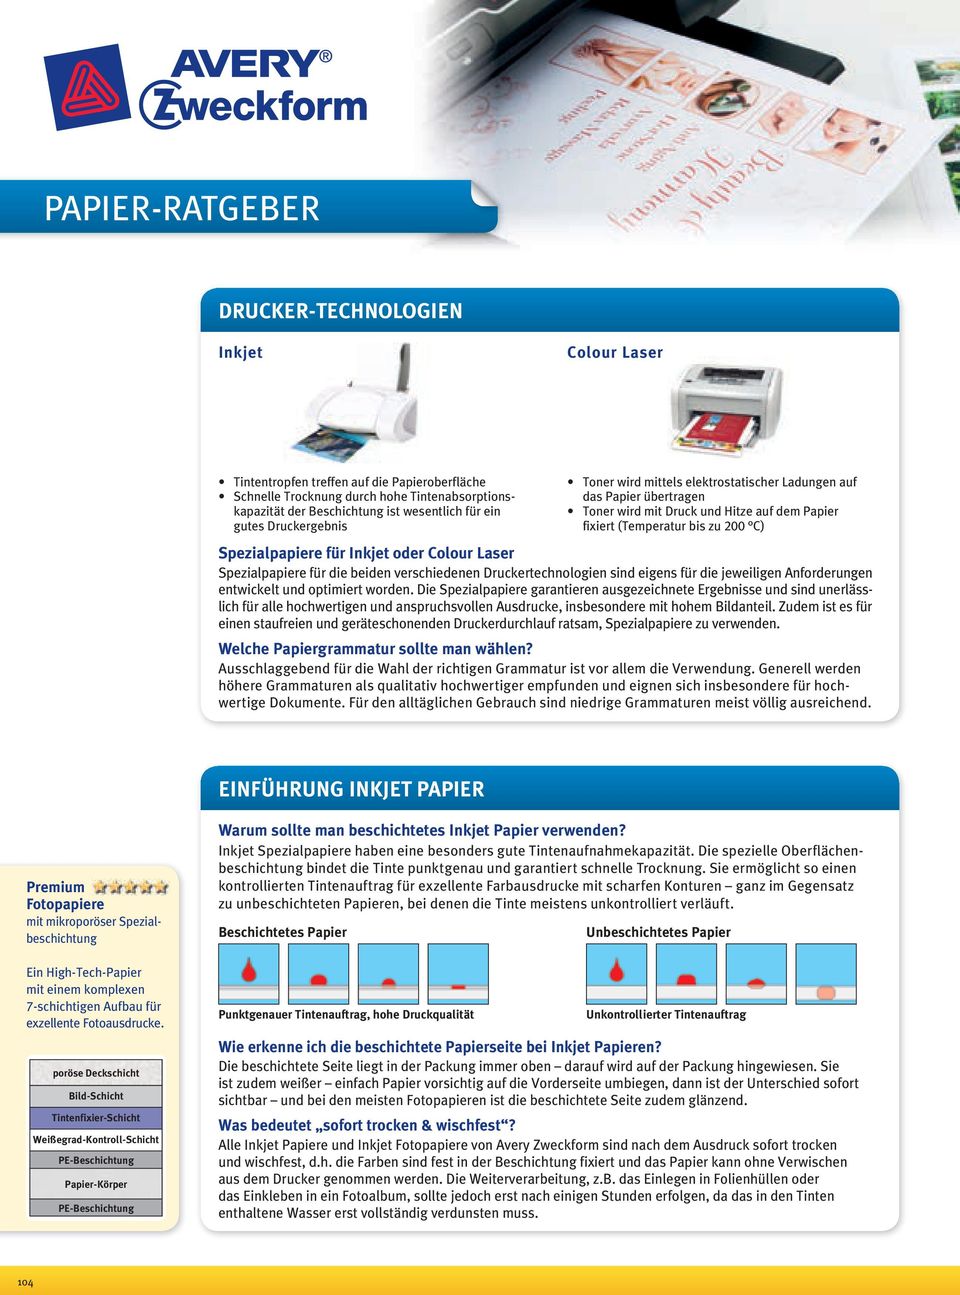 Inkjet oder Colour Laser Spezialpapiere für die beiden verschiedenen Druckertechnologien sind eigens für die jeweiligen Anforderungen entwickelt und optimiert worden.